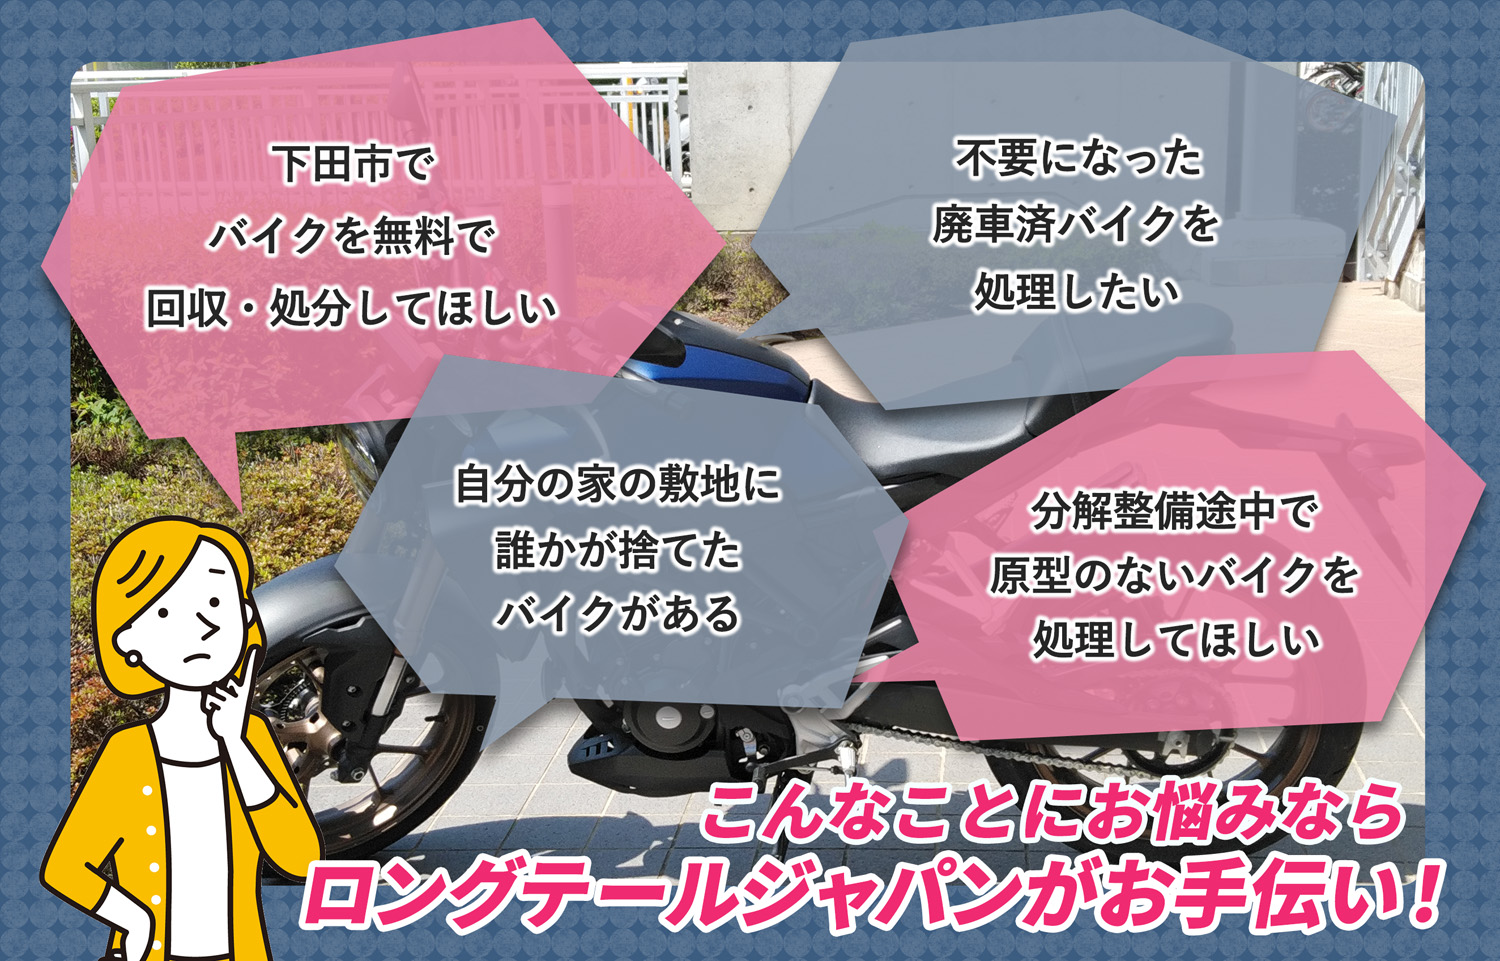 下田市でこんなバイクの処分にお困りでしたらバイク無料回収処分隊がお手伝いいたします。